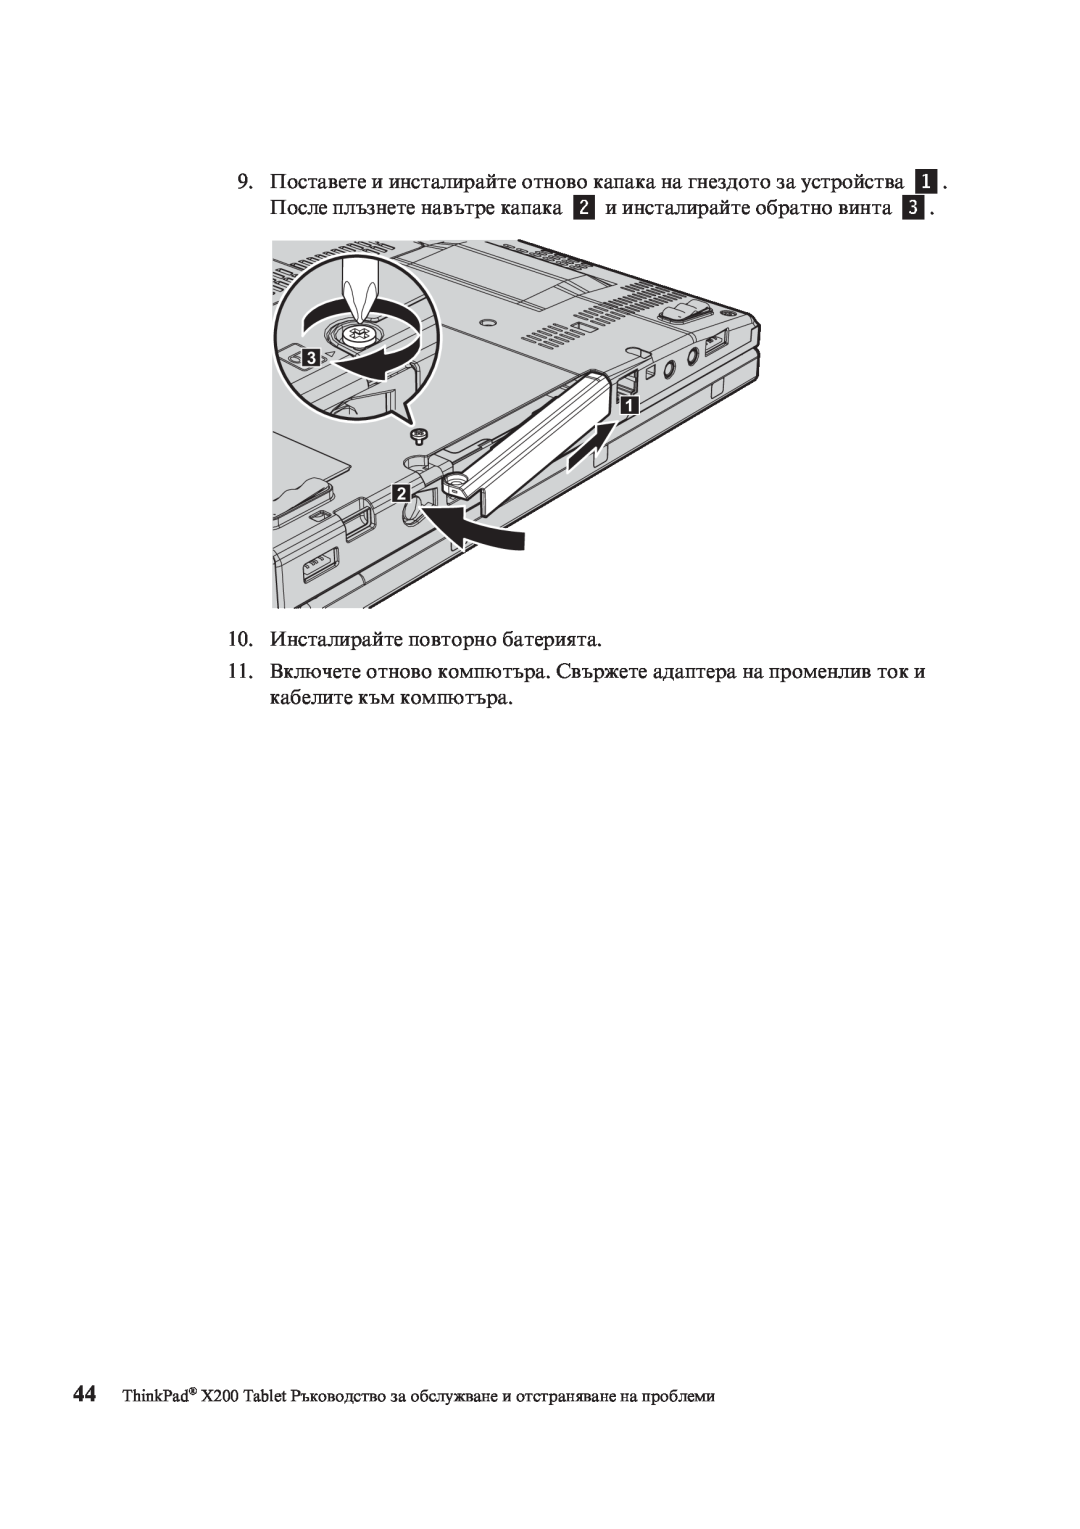 Lenovo X200 manual 10.Инсталирайте повторно батерията 